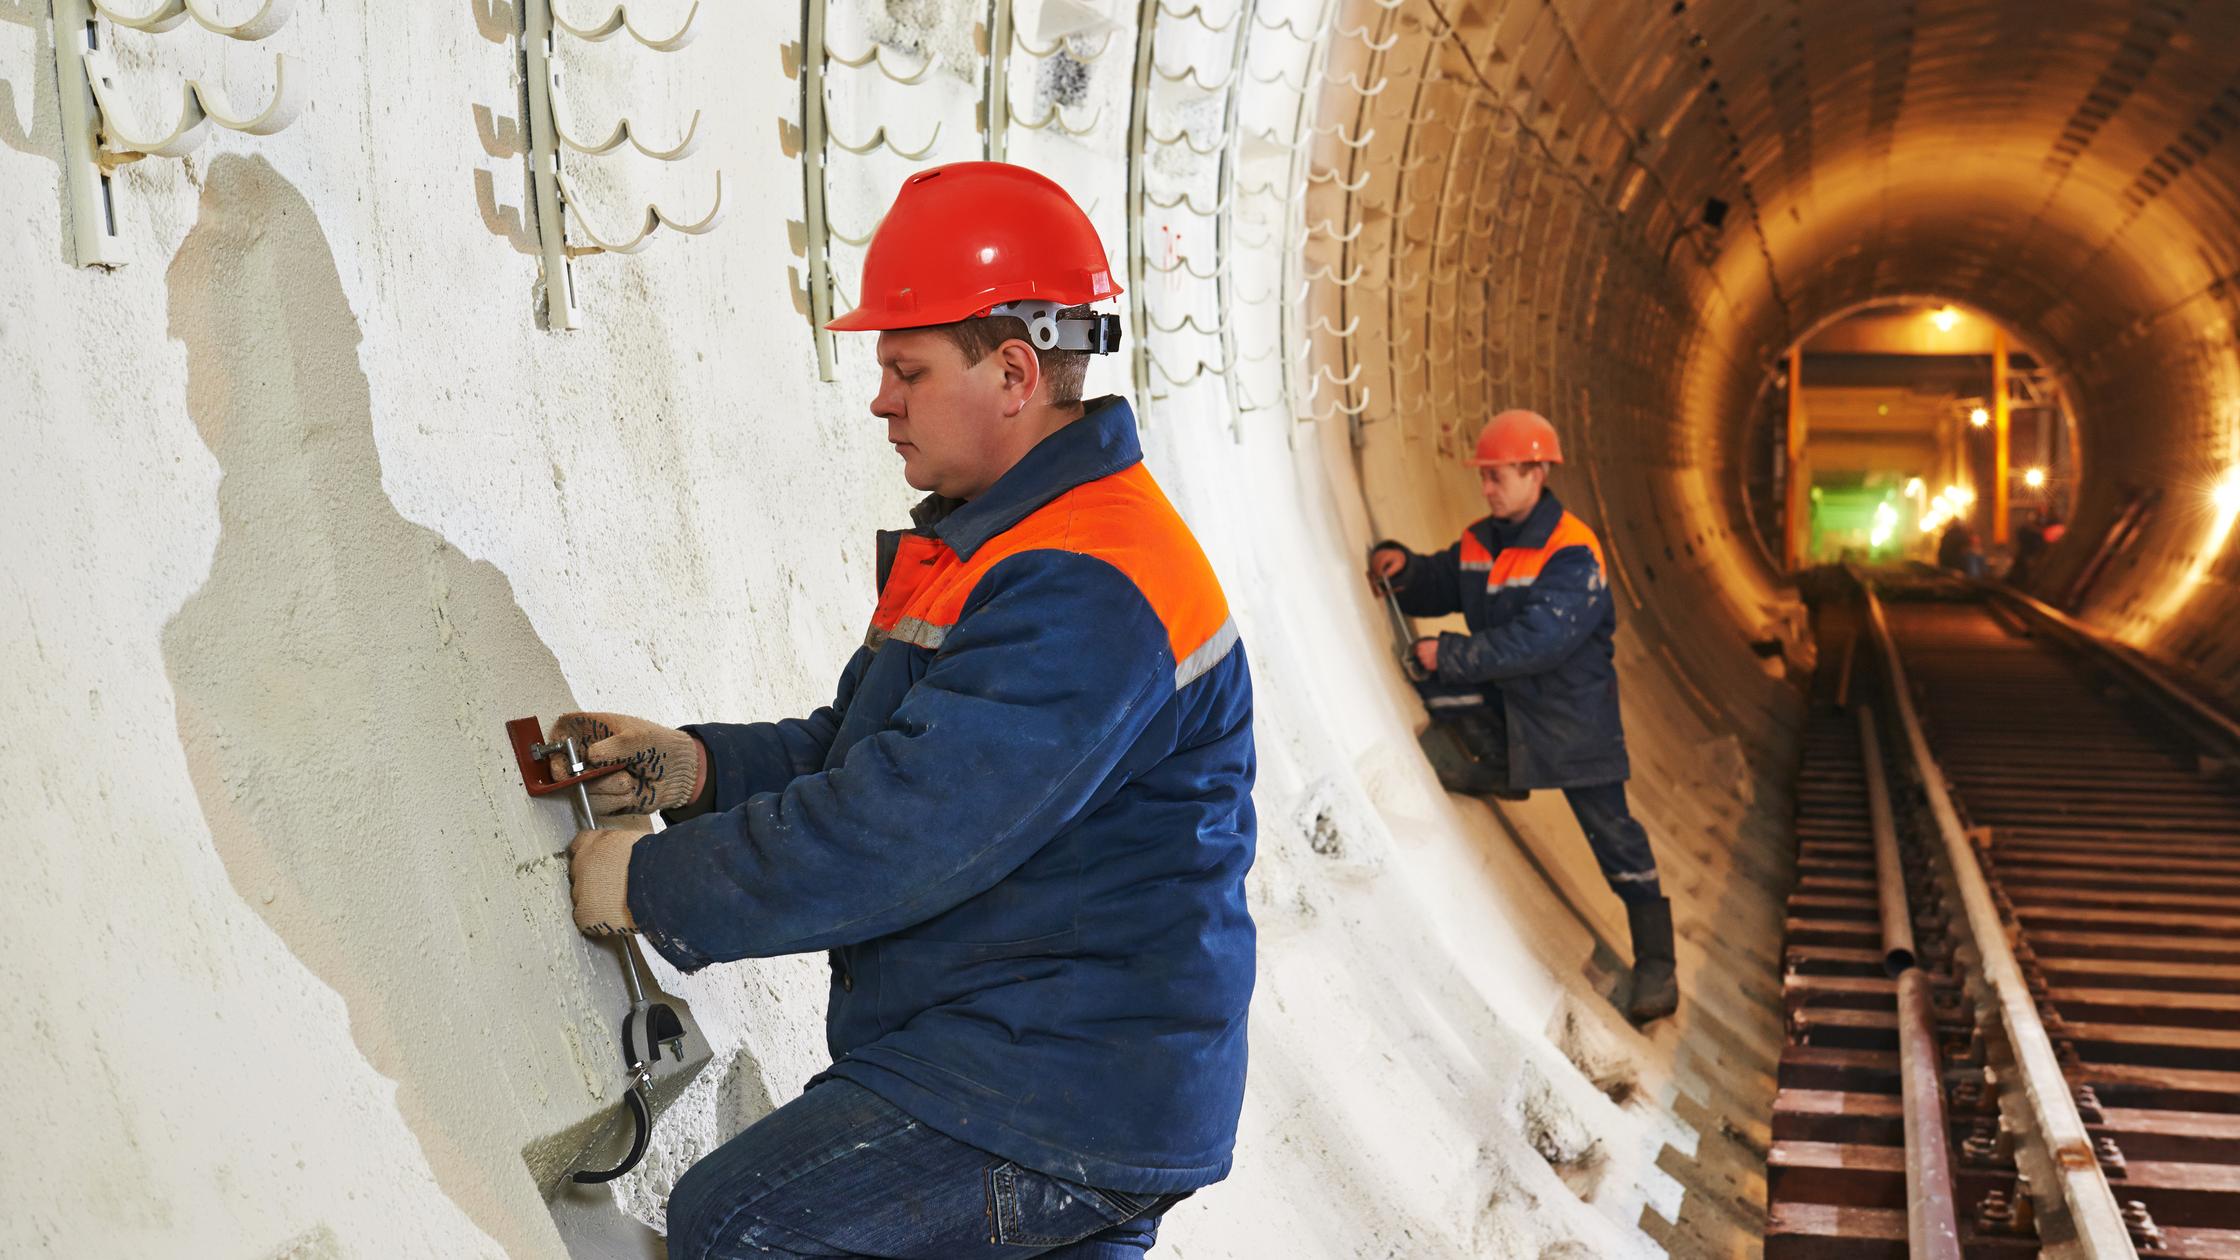 Identify - Tunneller worker installing fixture in underground subway metro construction site